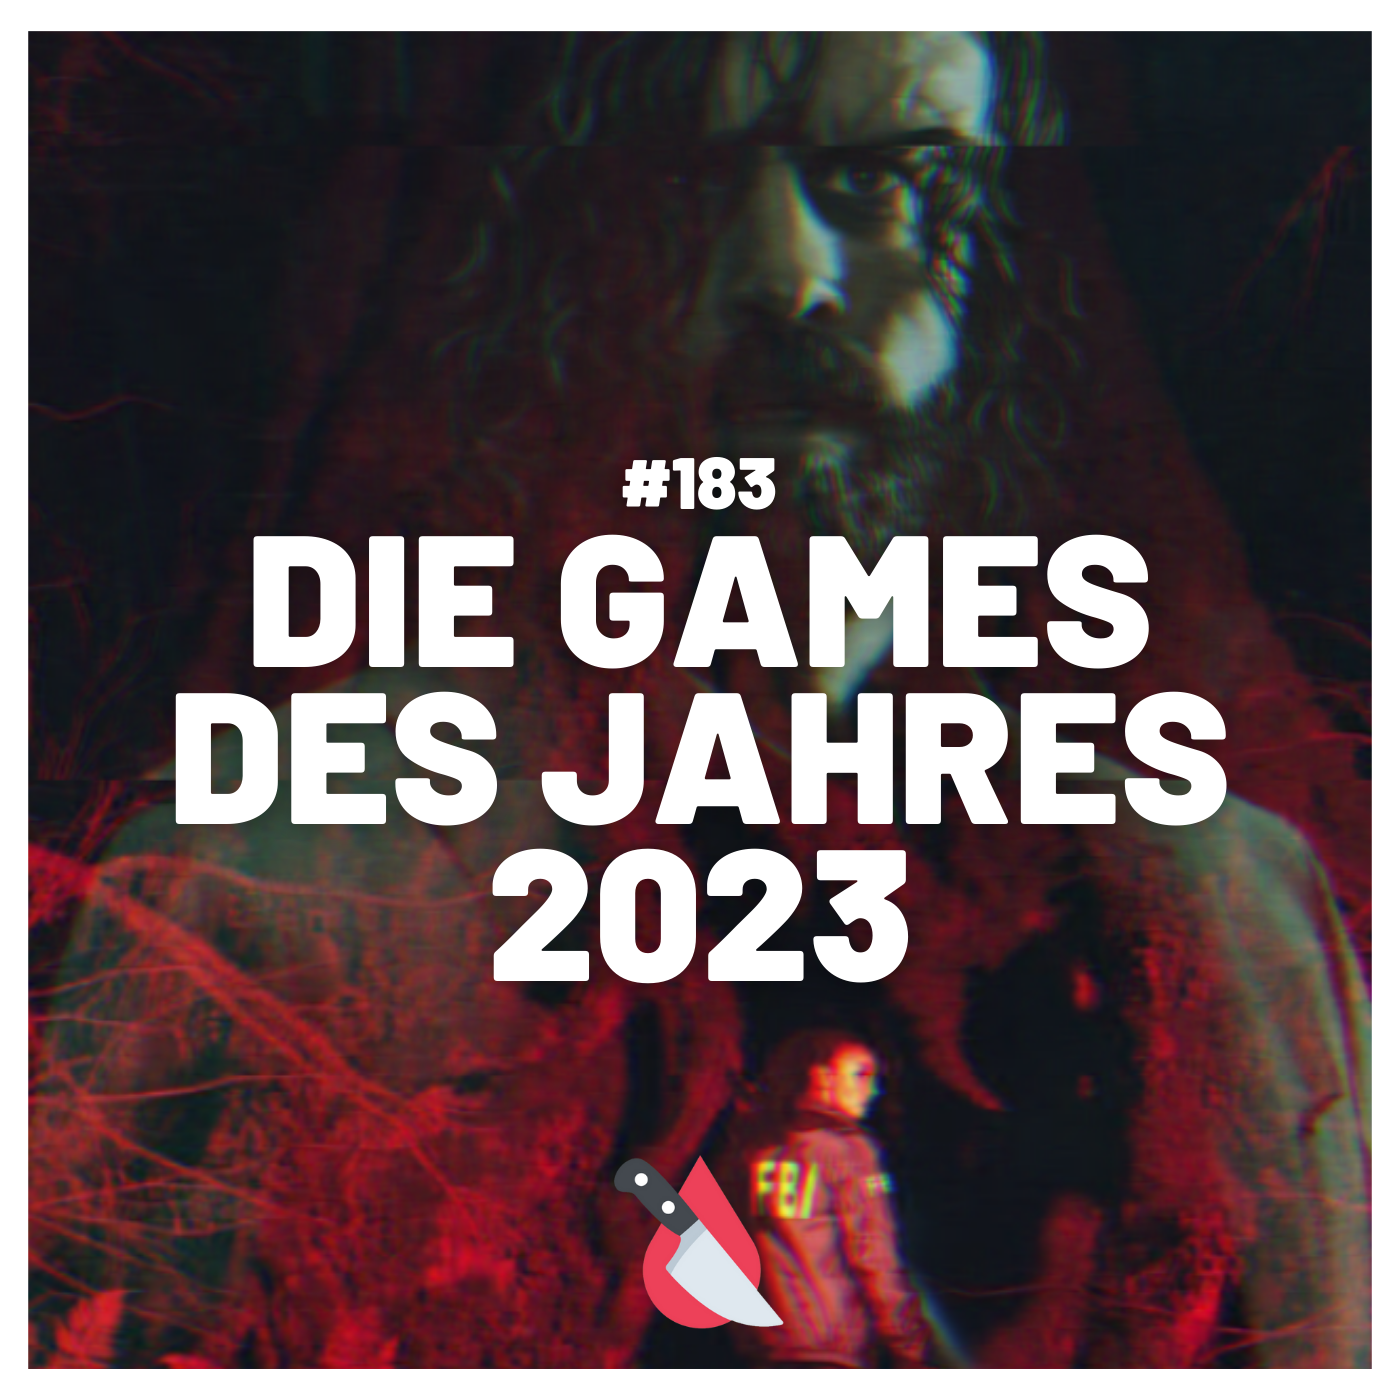 #183 - Die Games des Jahres 2023